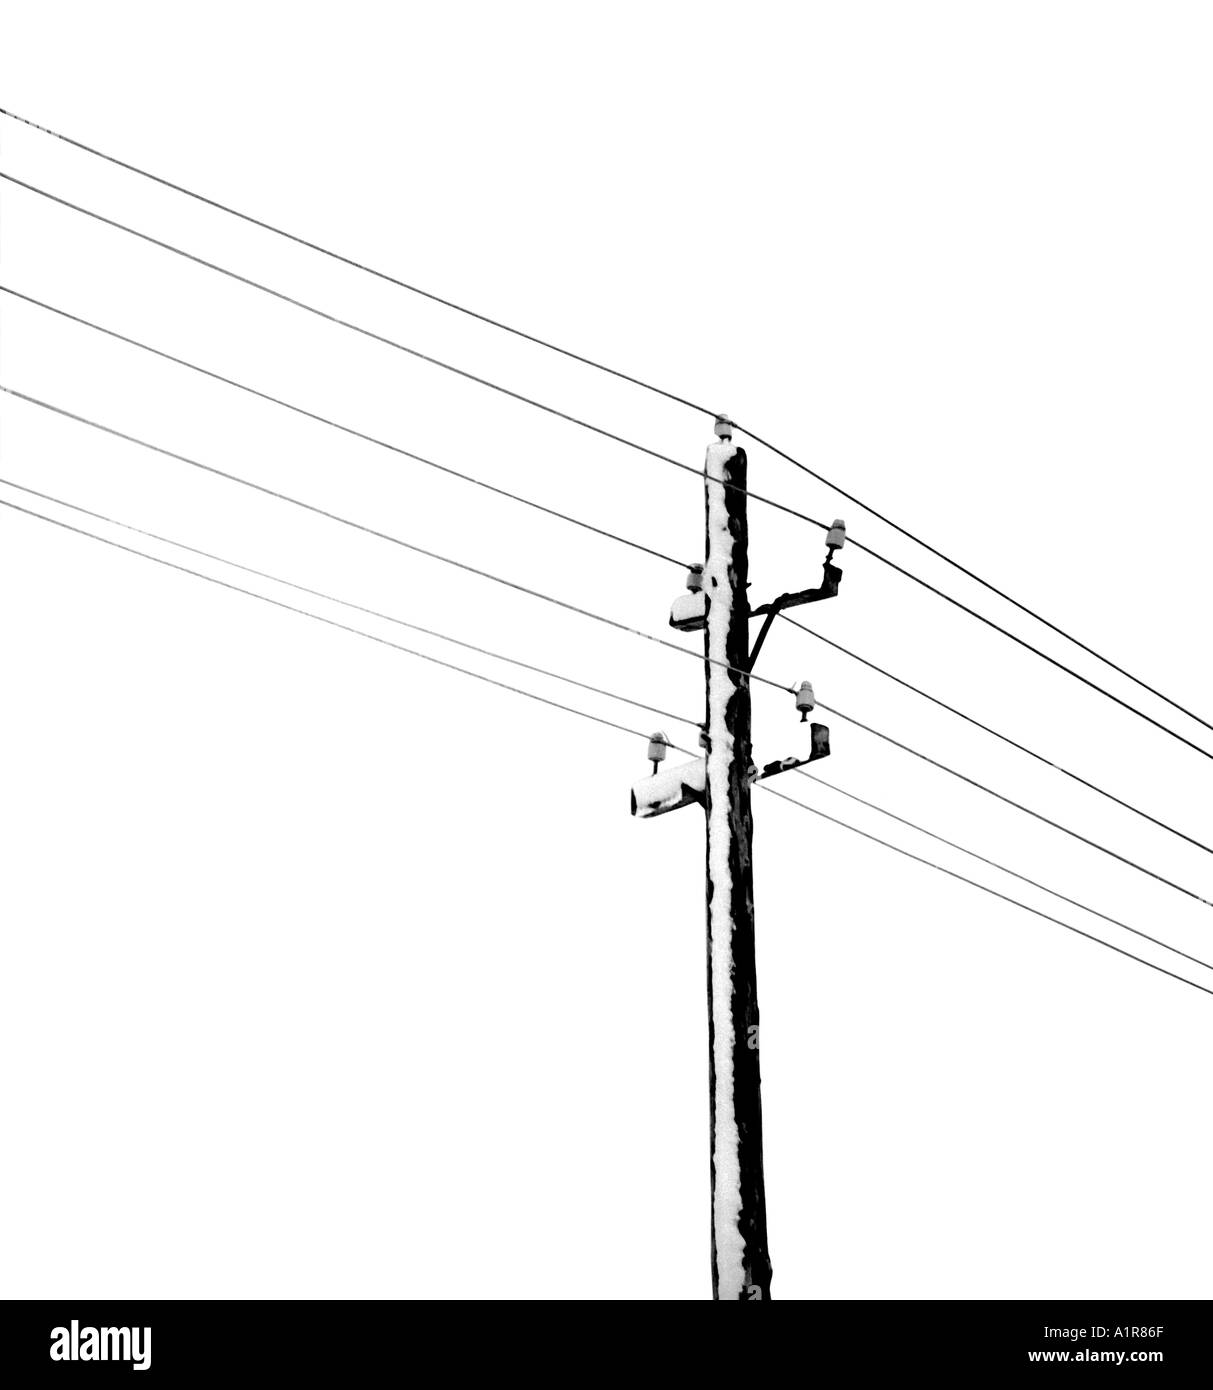 Poste de electricidad Imágenes de stock en blanco y negro - Alamy